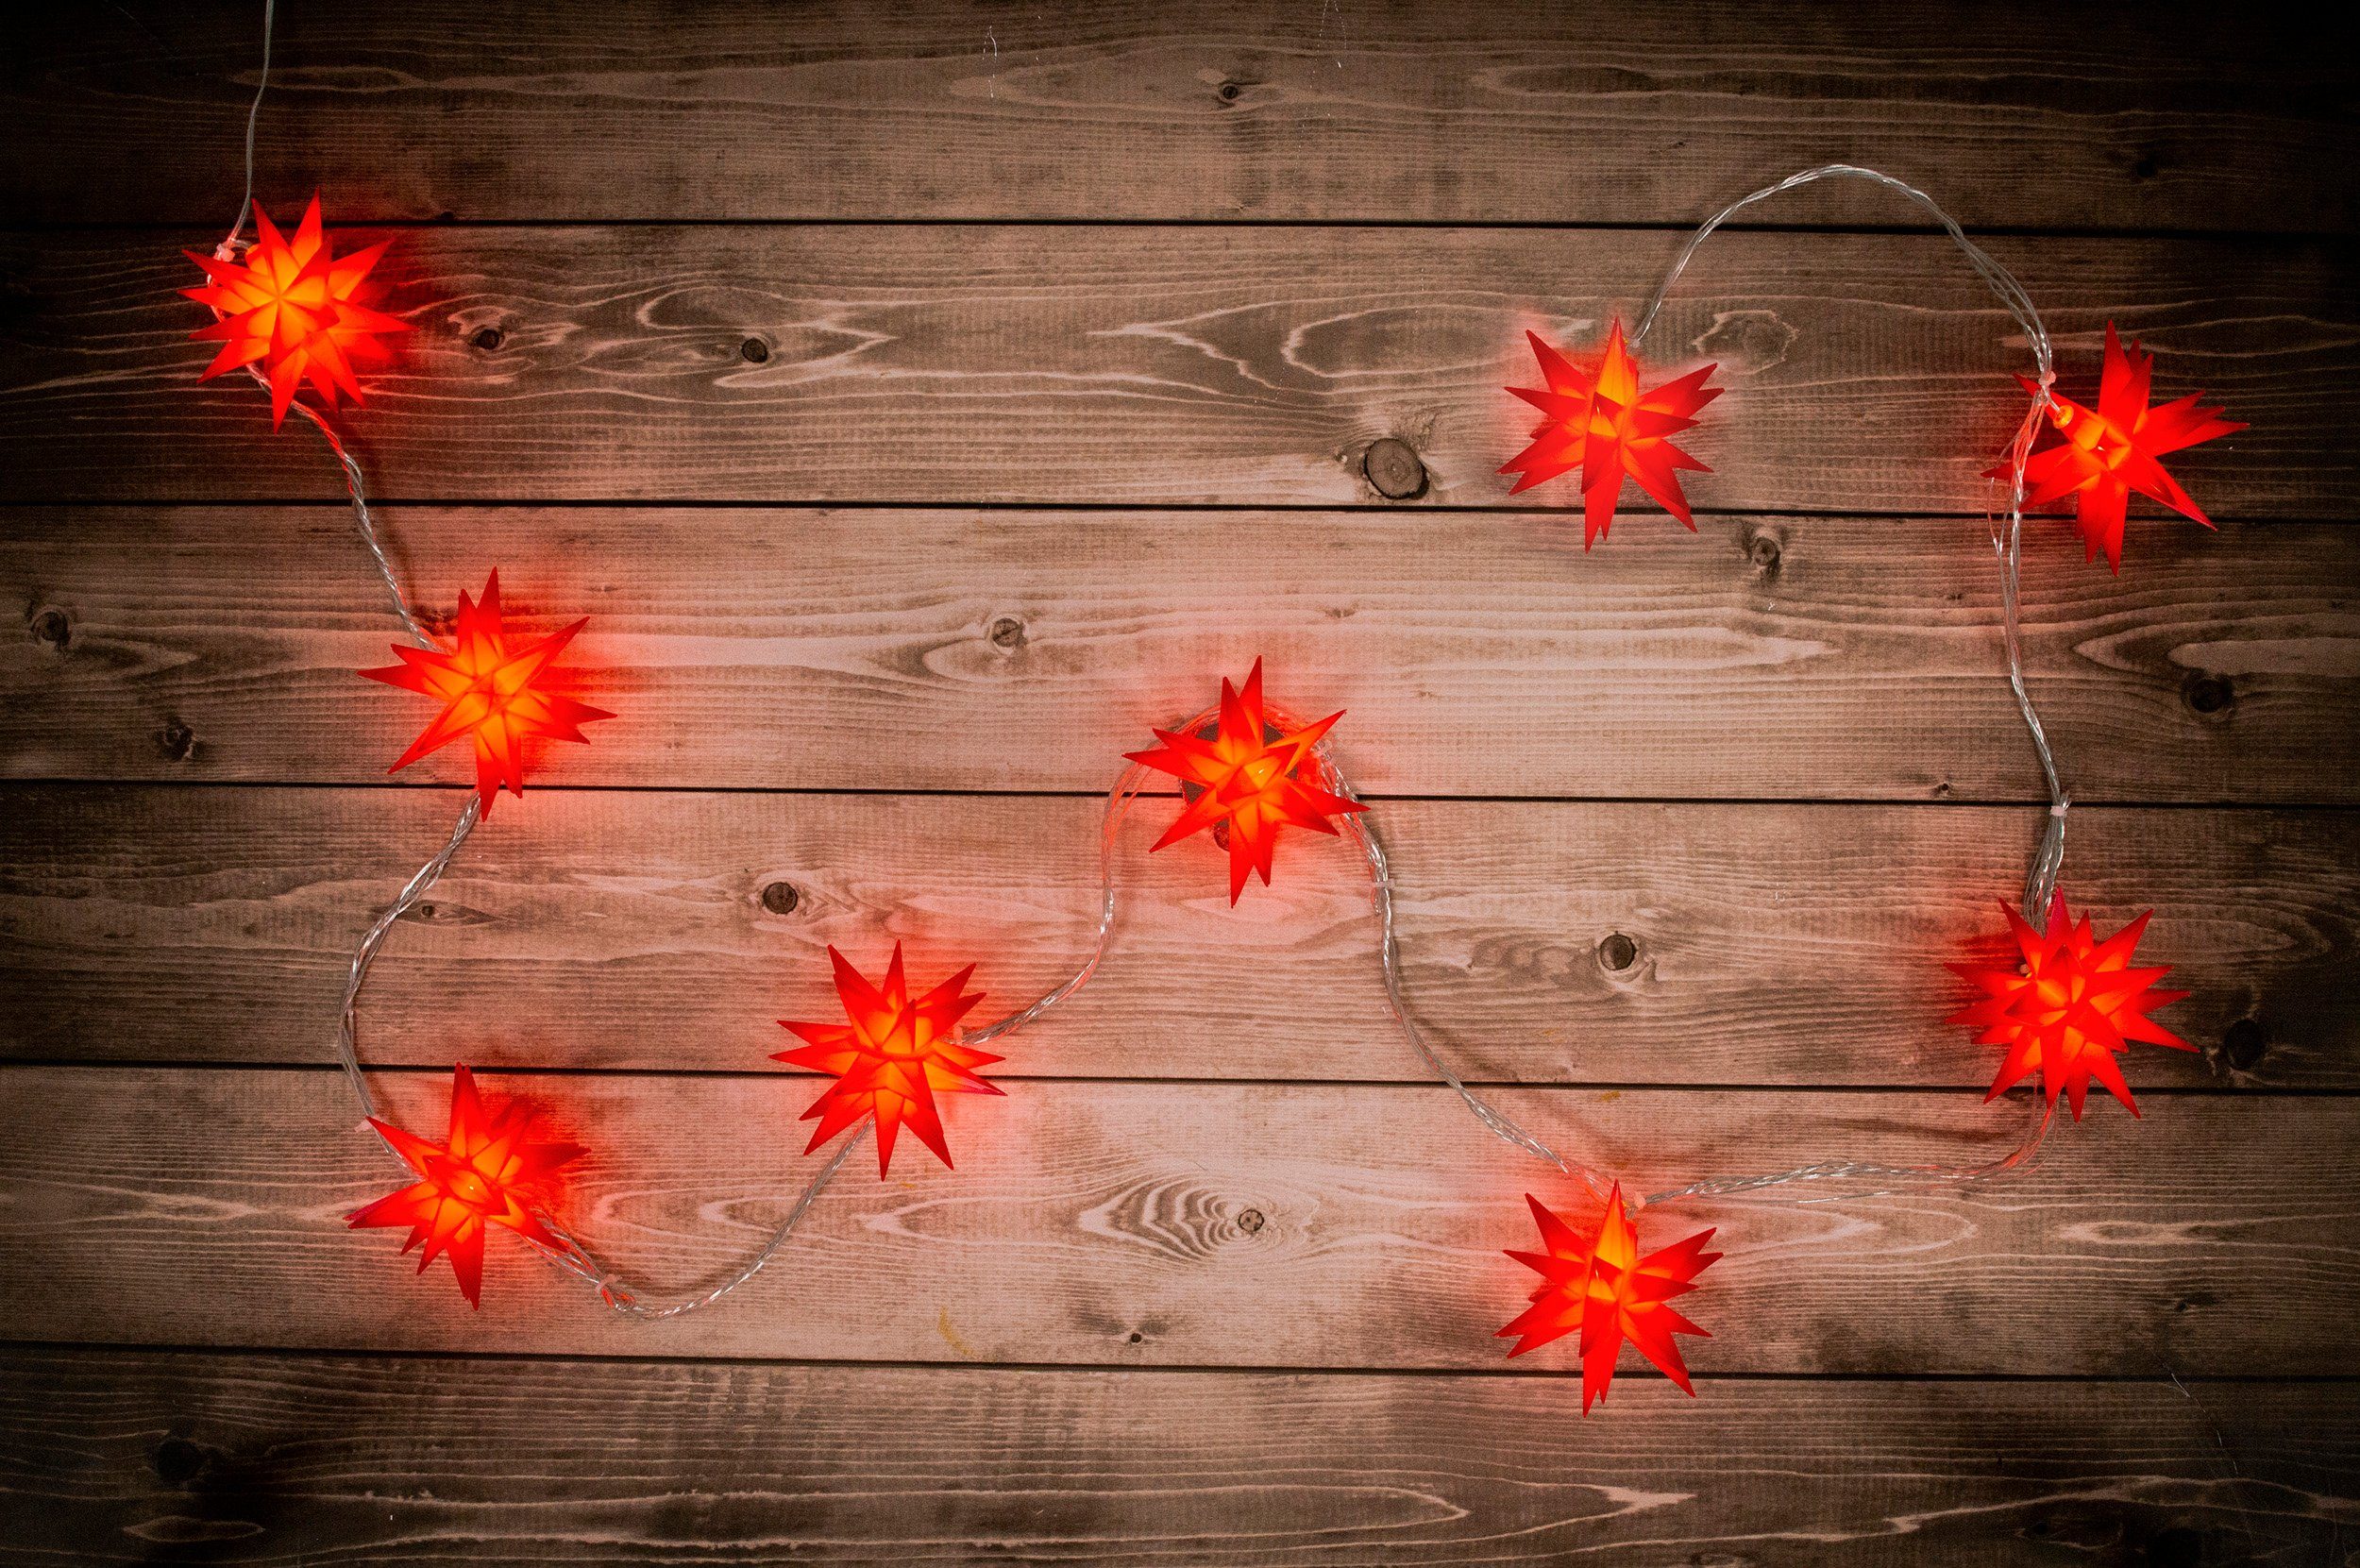 rot 3D-Sterne,Weihnachtsdeko LED-Weihnachtslichterkette näve aussen, LED-Lichterkette 3D-Stern